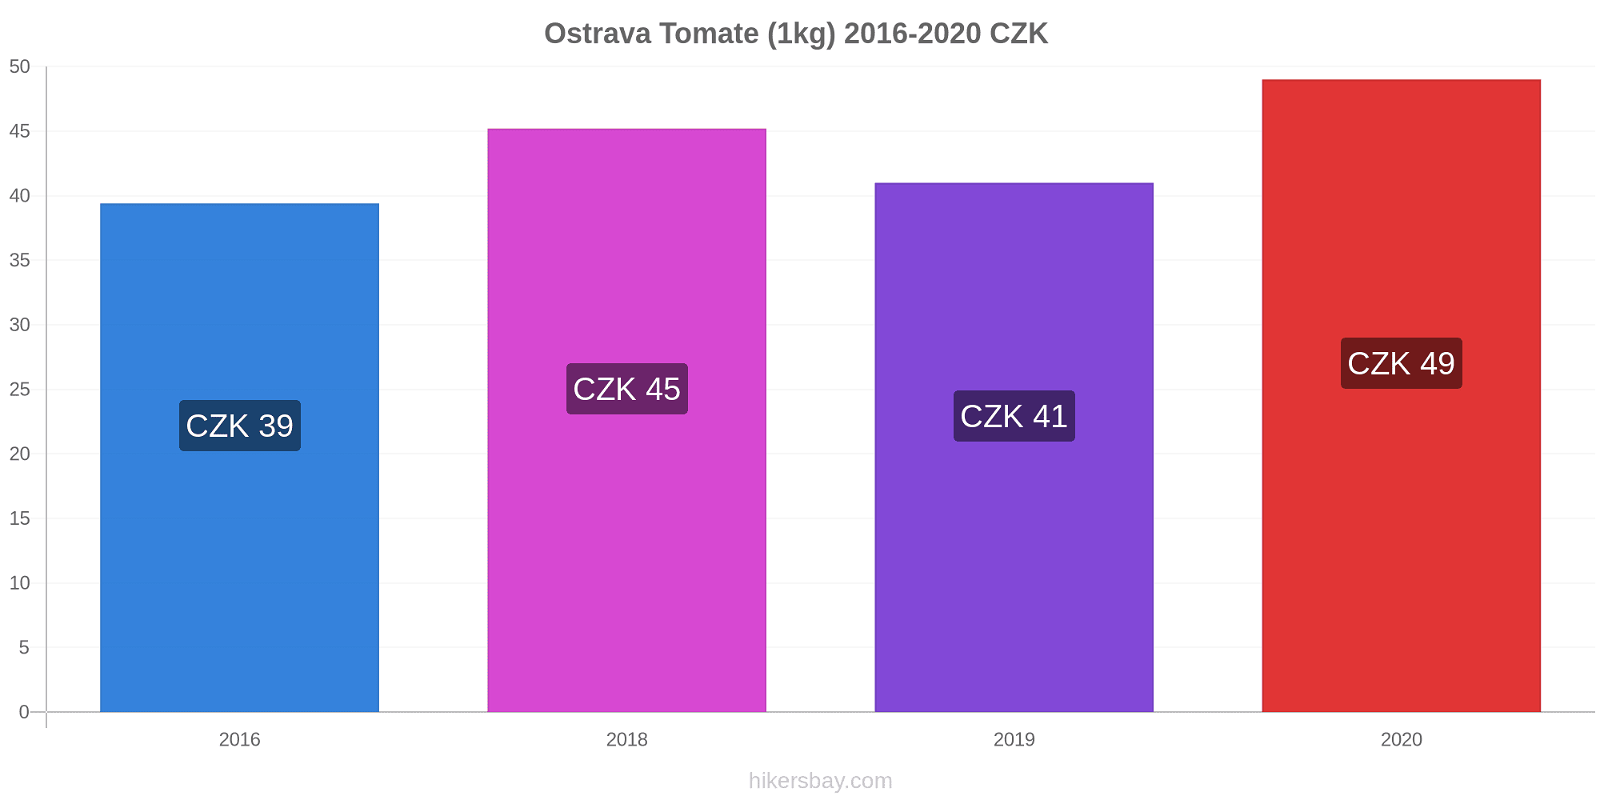 Ostrava changements de prix Tomate (1kg) hikersbay.com